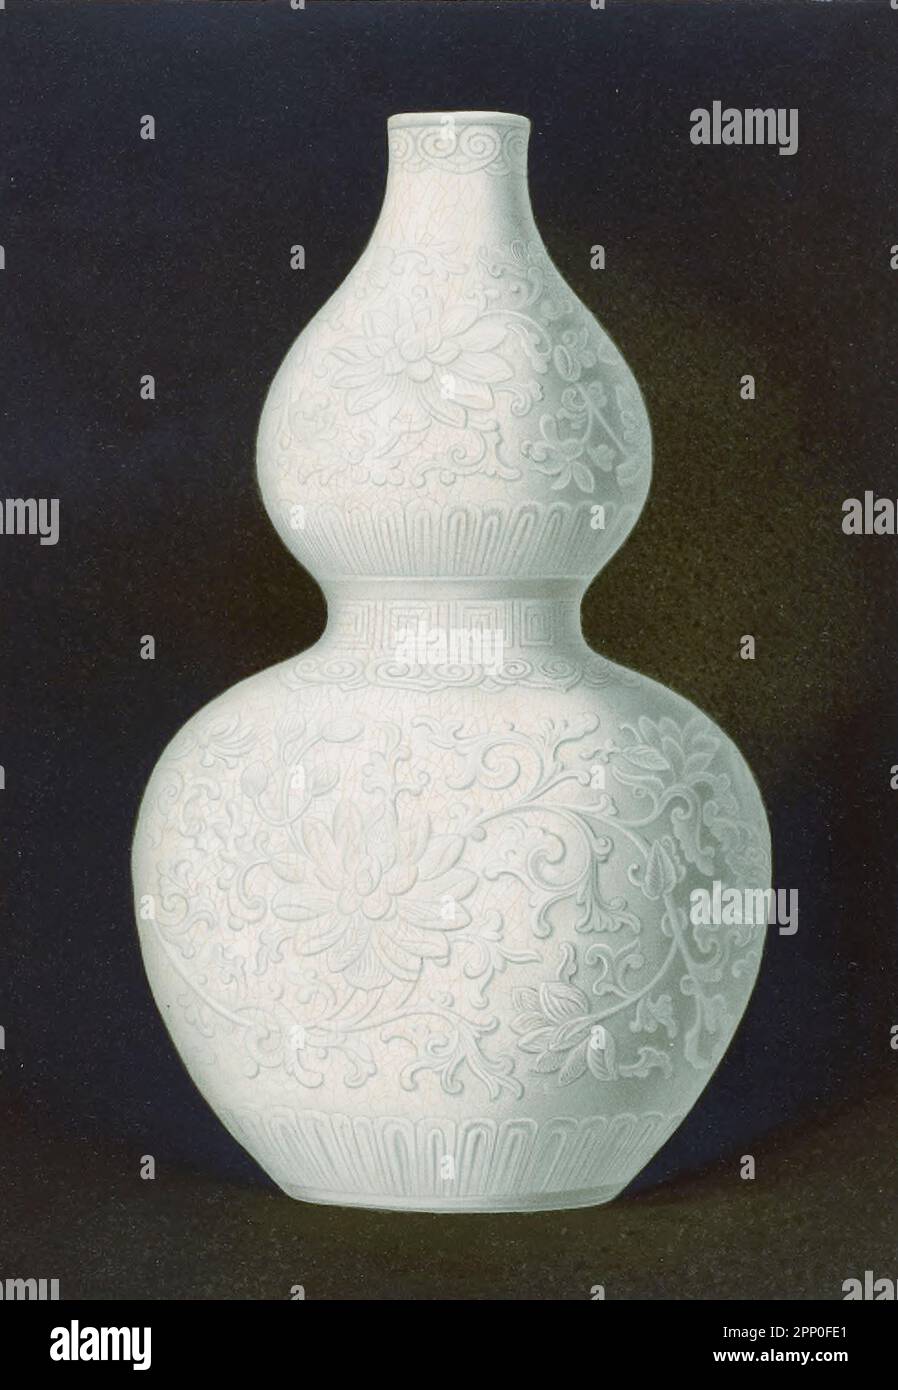 WEISSER FEN-TING-KÜRBIS. DOPPELRIPPENVASE (Hu-lu P'ing) aus Fen-Ting-Porzellan mit einer grau-weißen Paste von feiner Textur, mit einer elfenbeinfarbenen Glasur von reinster Lichtdurchlässigkeit, zart durchbrochen mit einem welligen Netz hellbrauner Linien, robably, K'ang-hsi-Periode {1662-1722), Aus dem Buch " ORIENTAL CERAMIC ART COLLECTION OF William Thompson Walters ", veröffentlicht 1897 Stockfoto